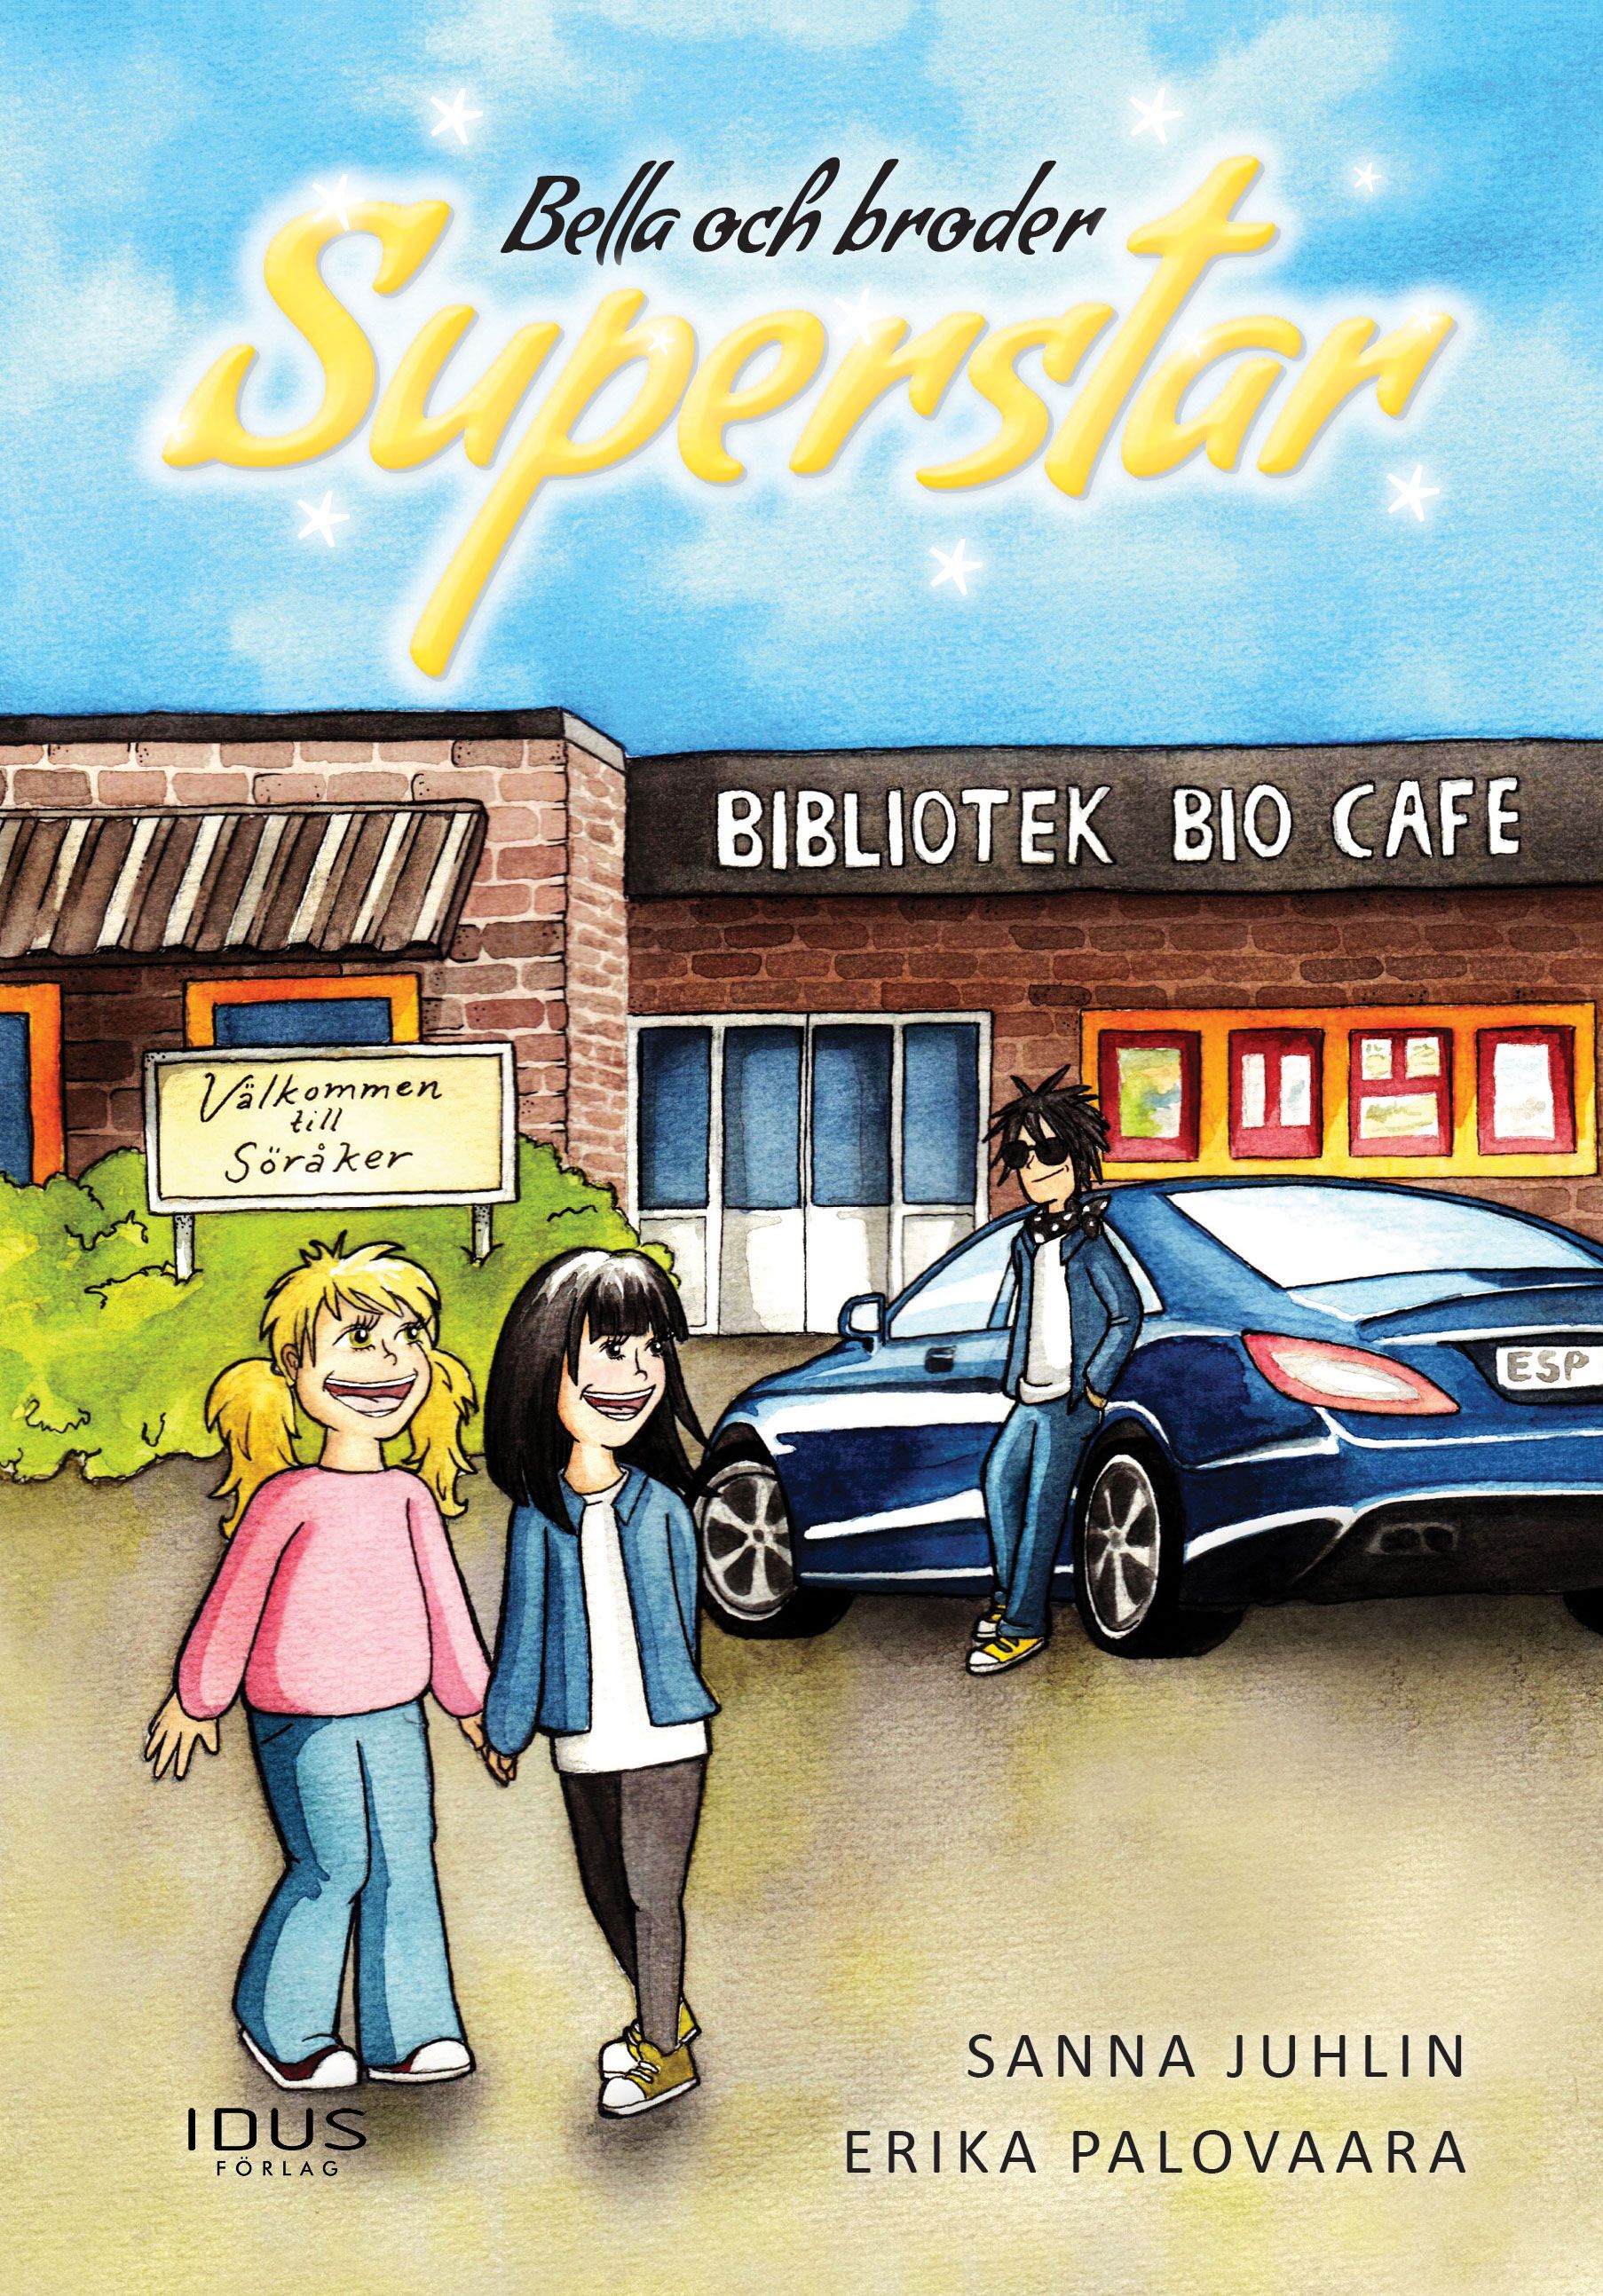 Bella och broder Superstar, e-bok av Sanna Juhlin